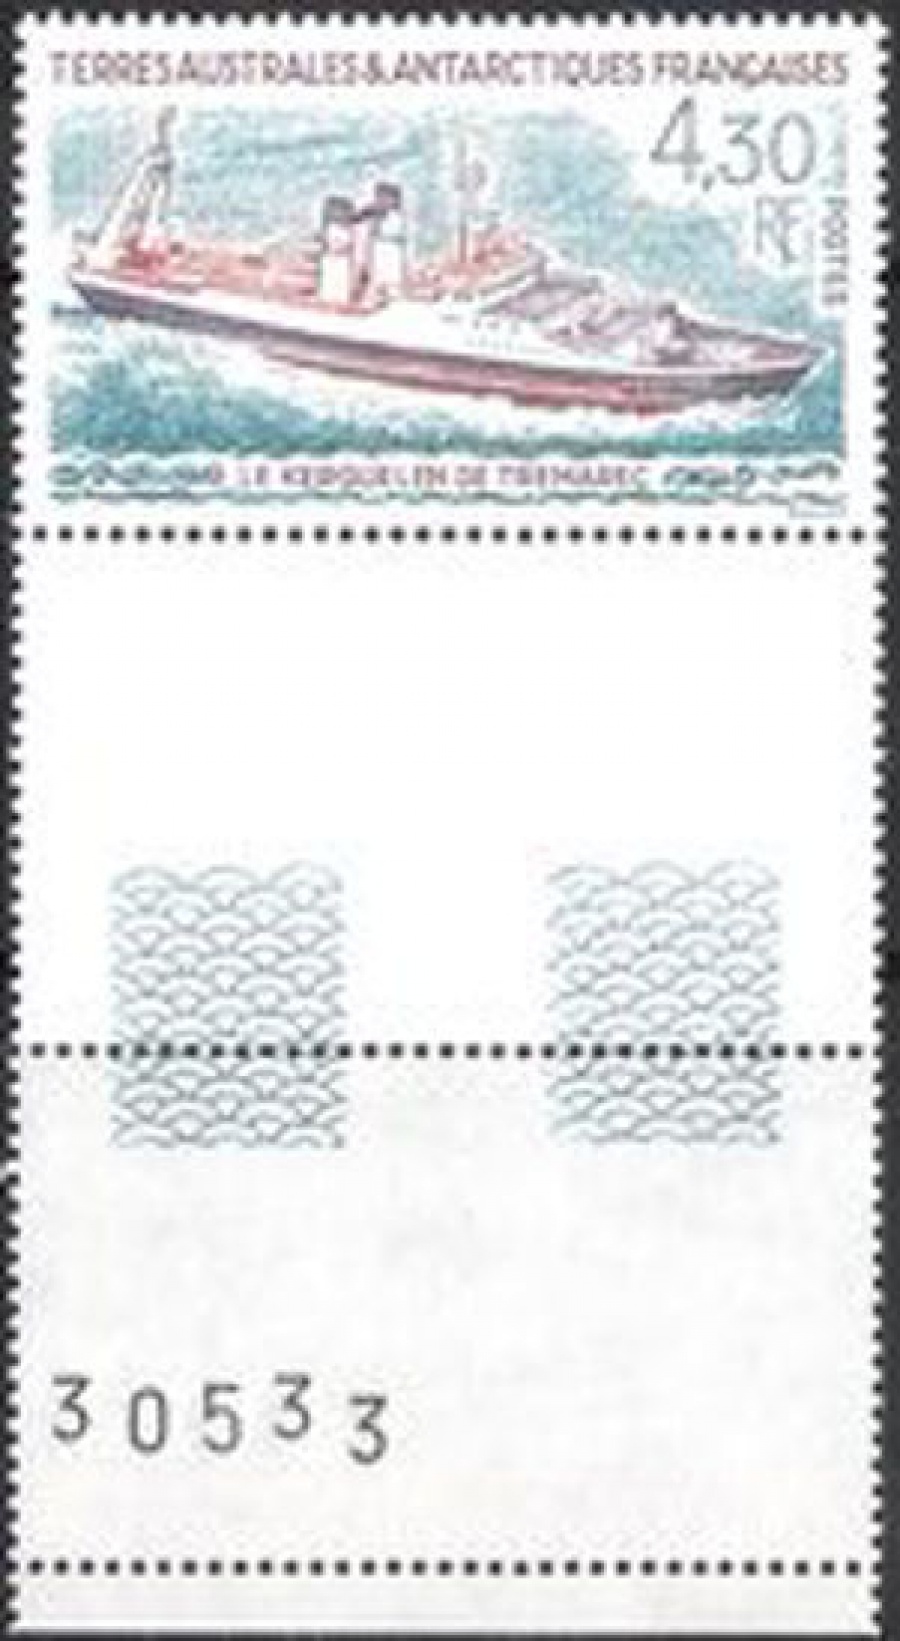 Почтовая марка Французские территории в Антарктике. Михель № 322